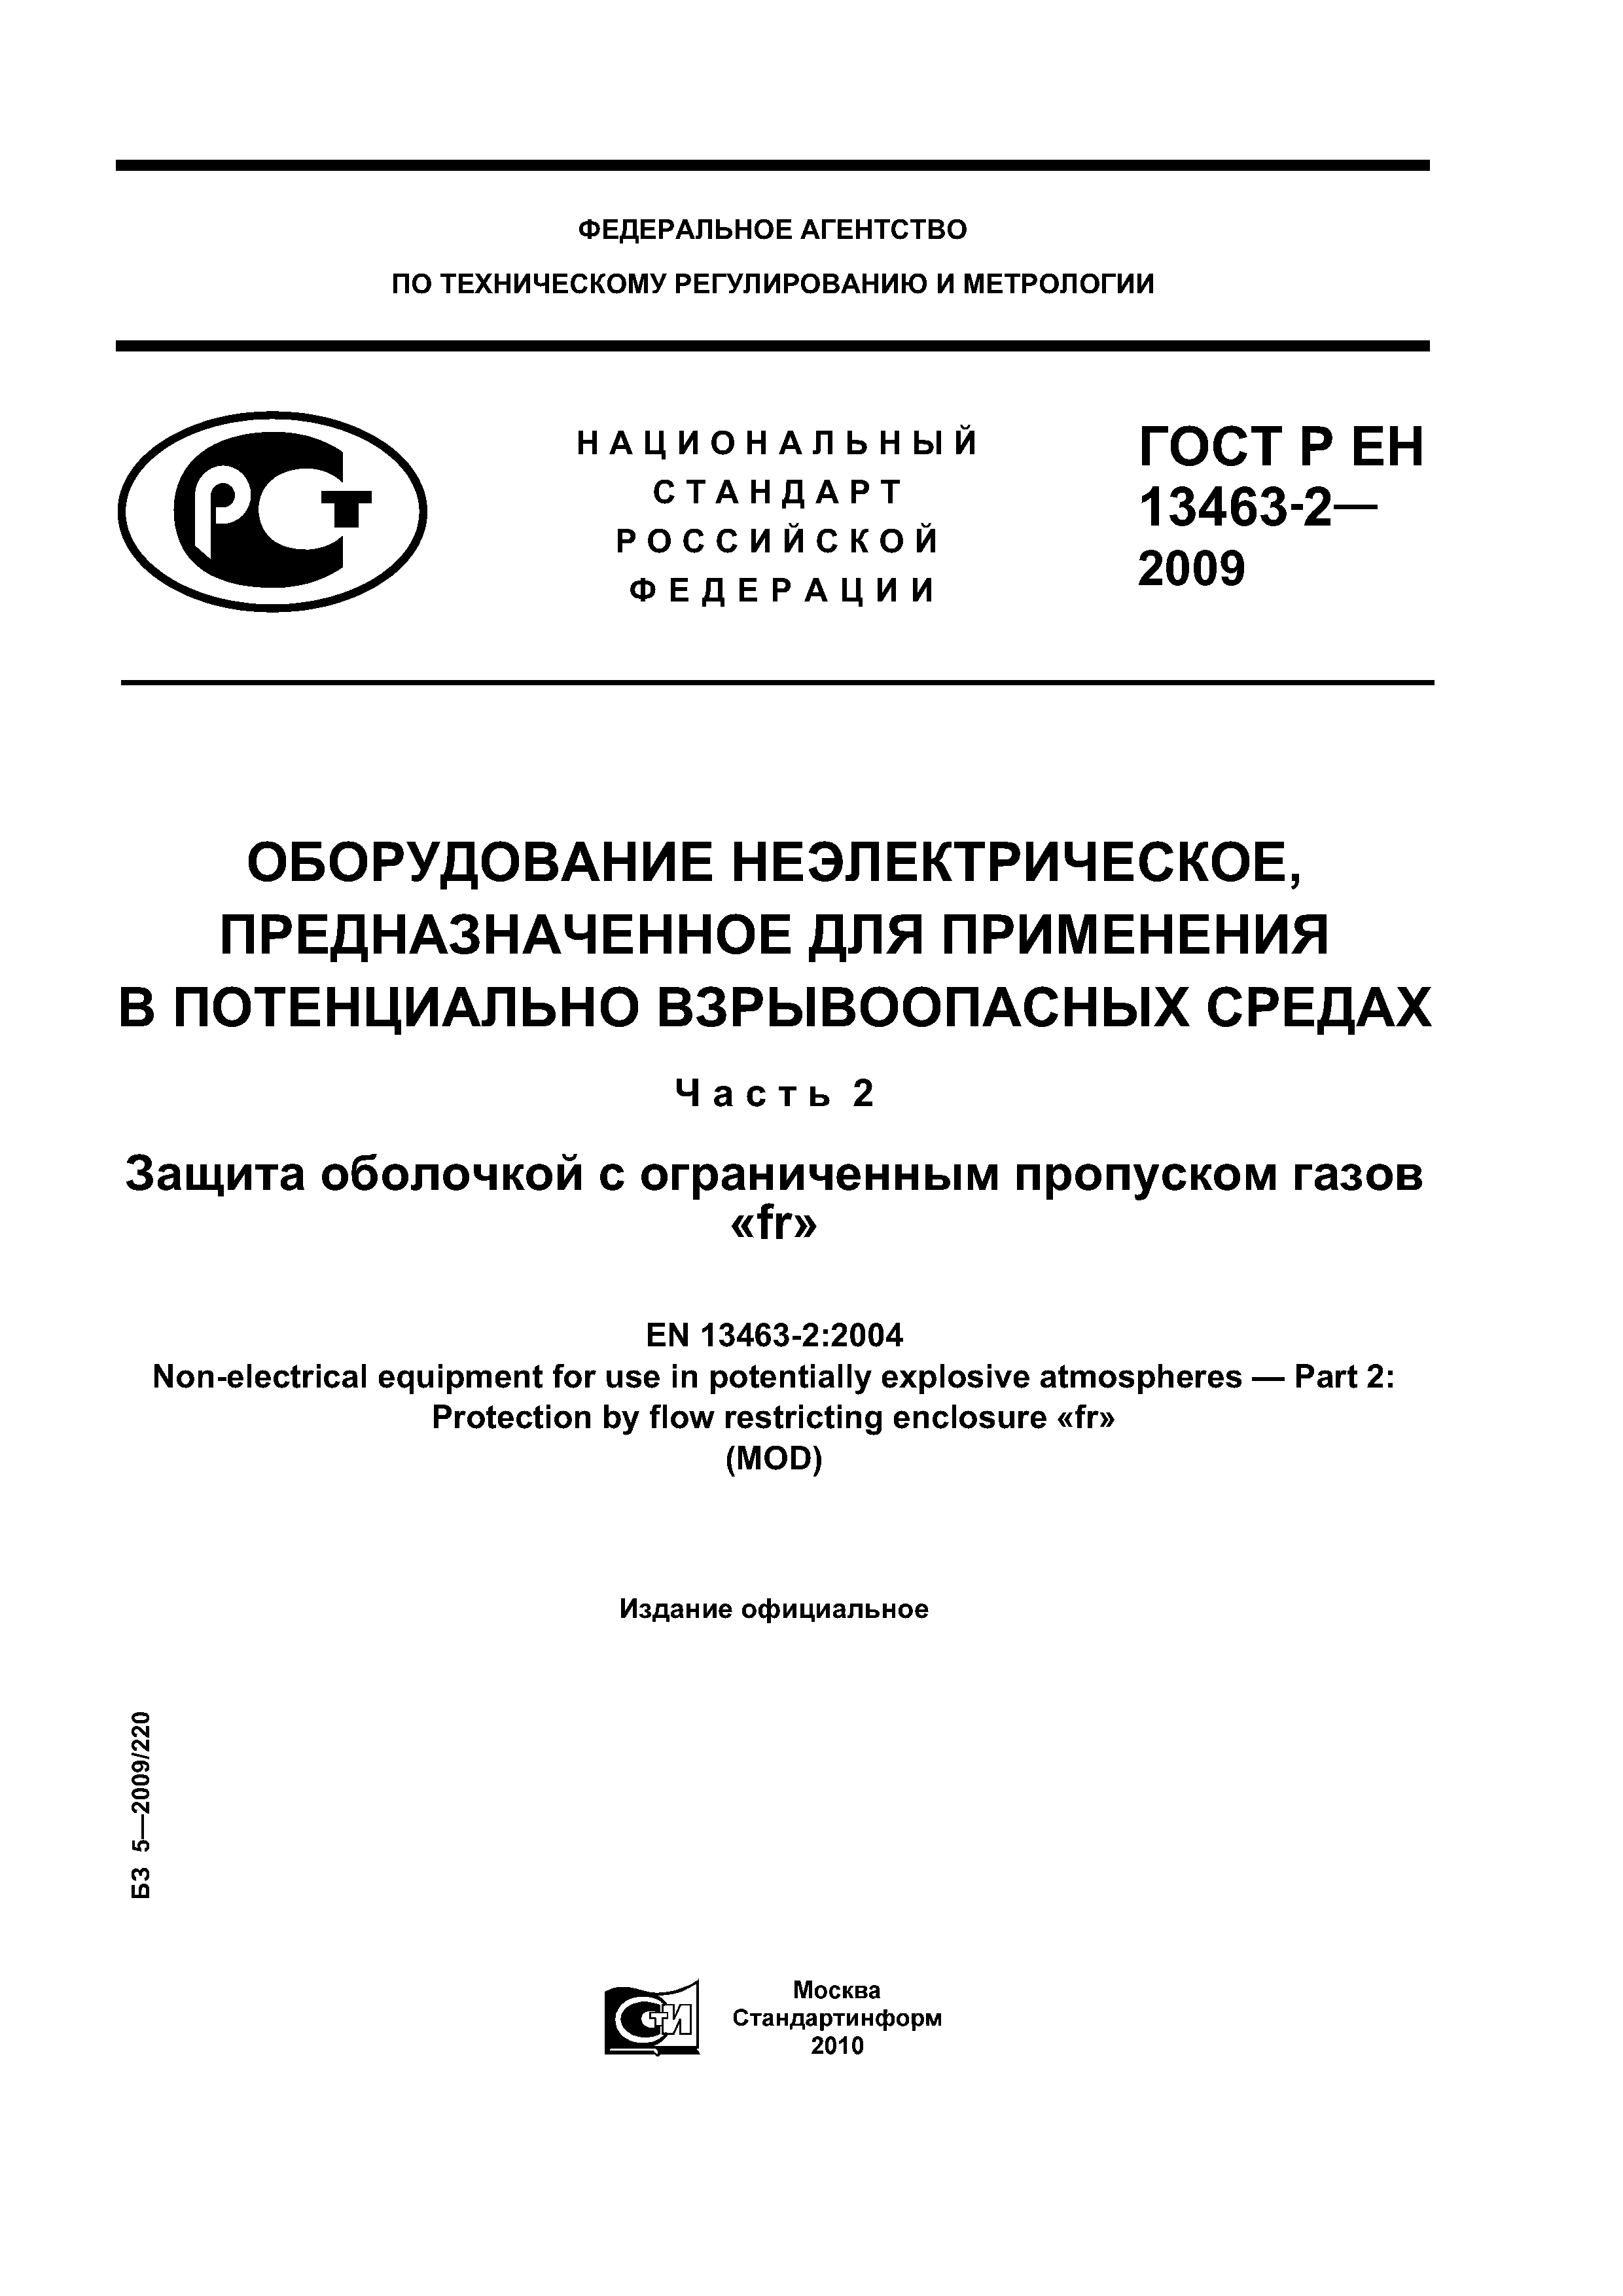 ГОСТ Р ЕН 13463-2-2009